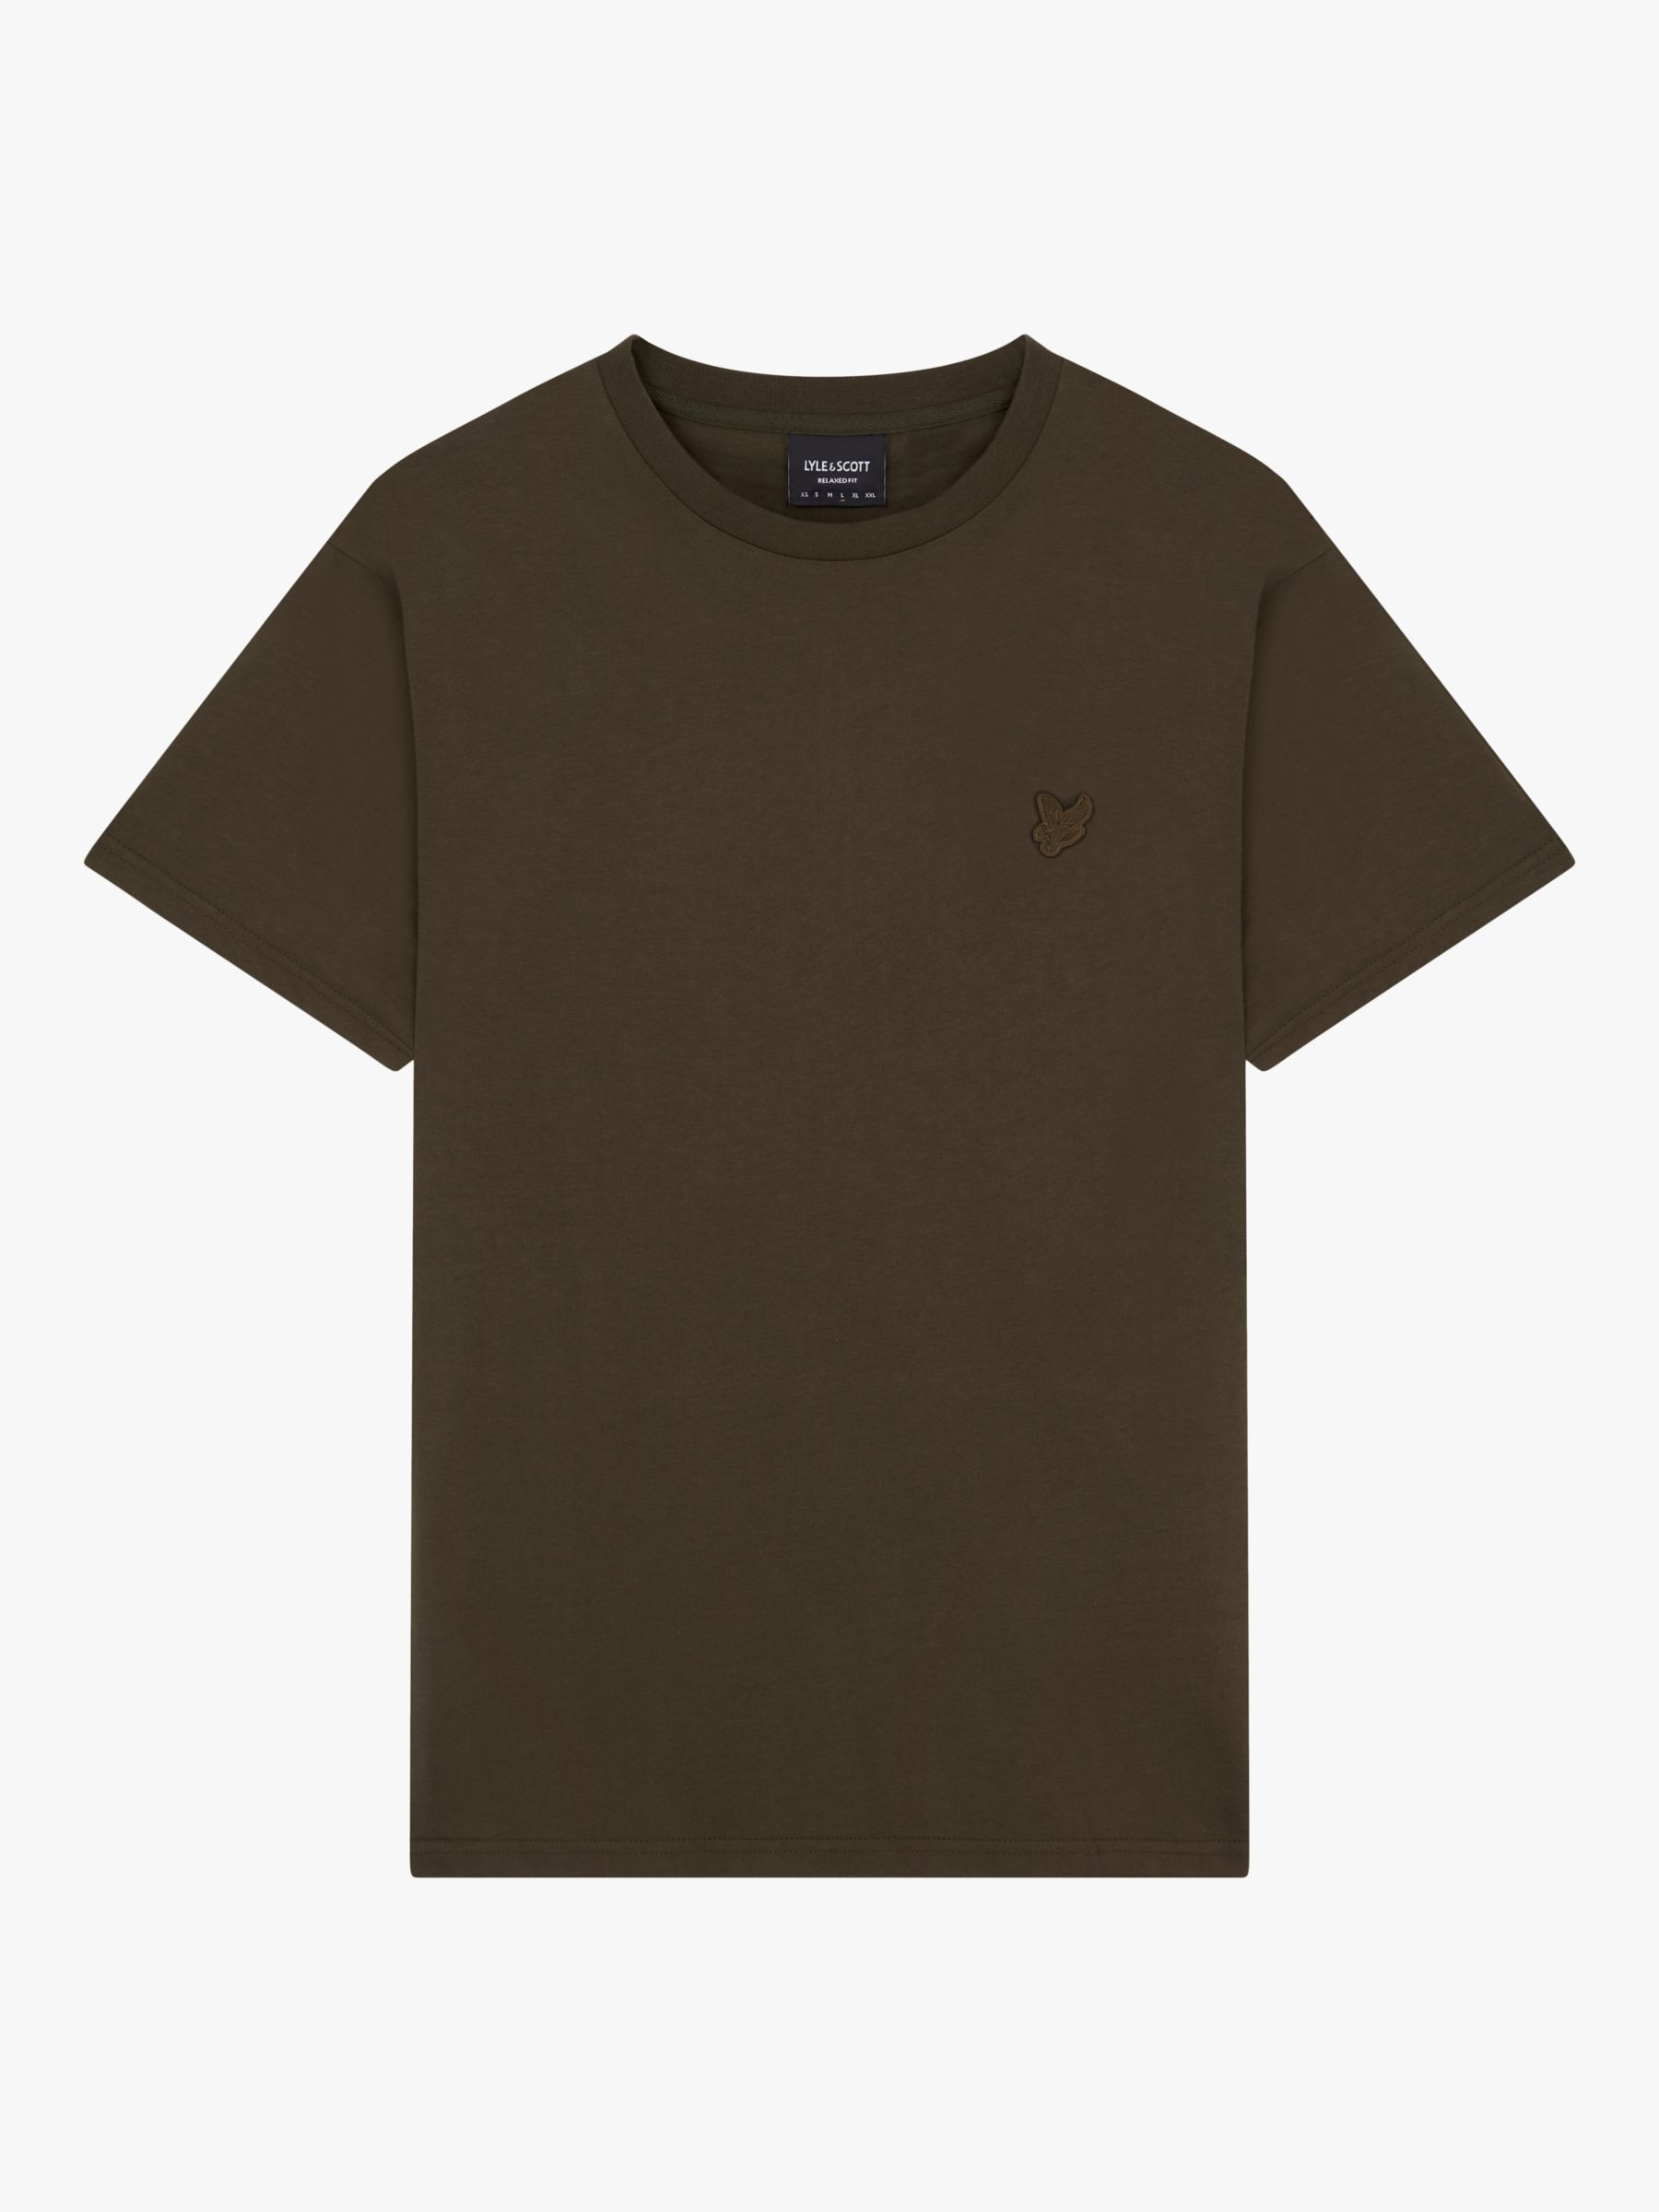 Lyle & Scott Plain Crew Neck T-Shirt, Olive, XS